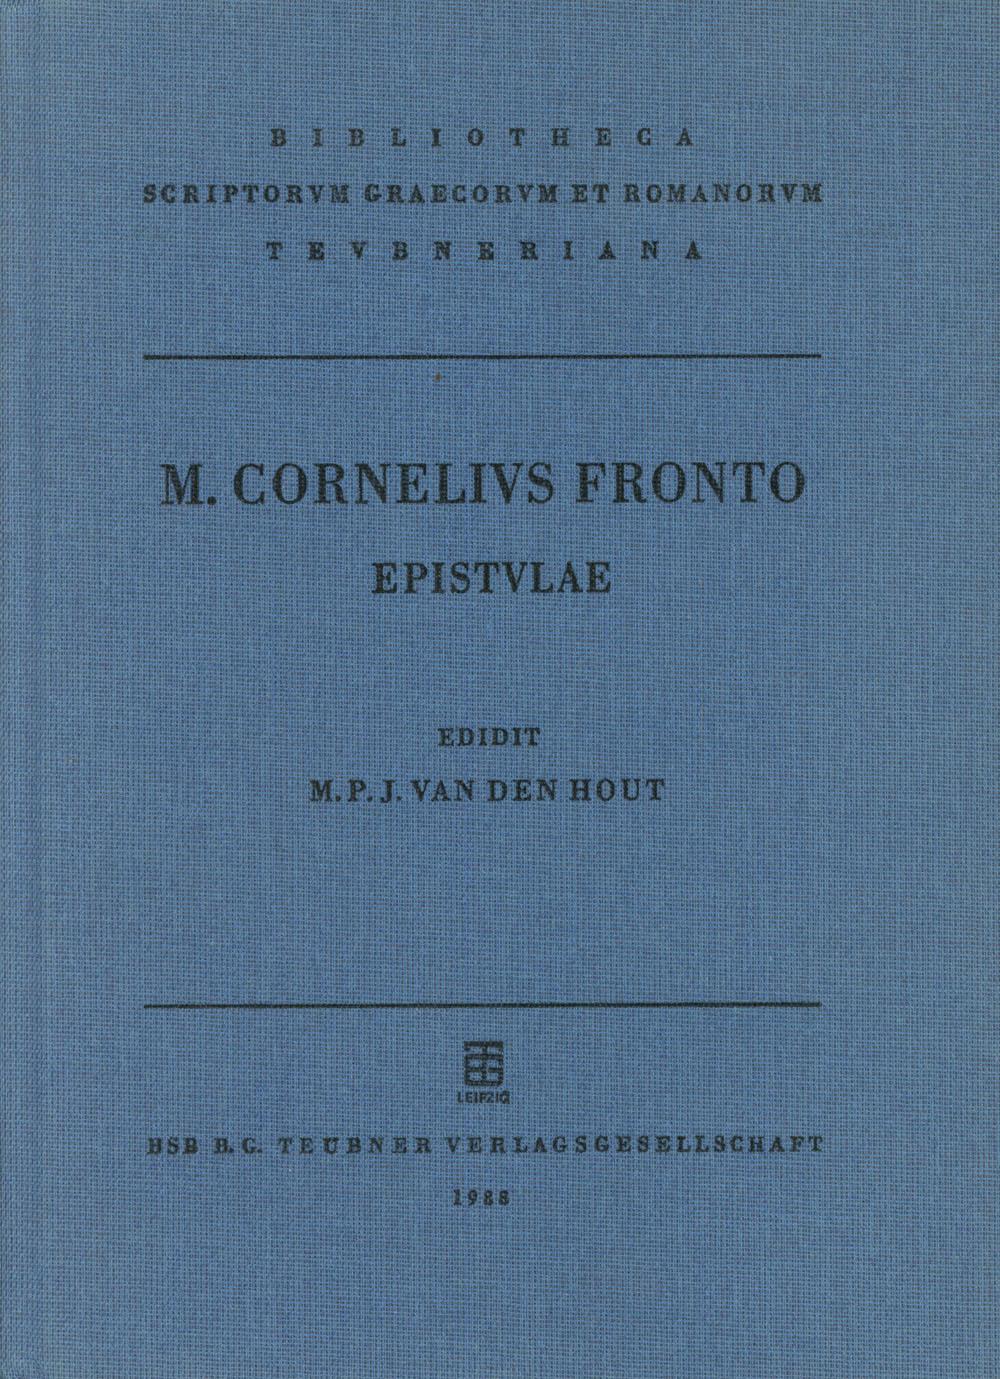 Frontonis, M. Cornelii, epistulae